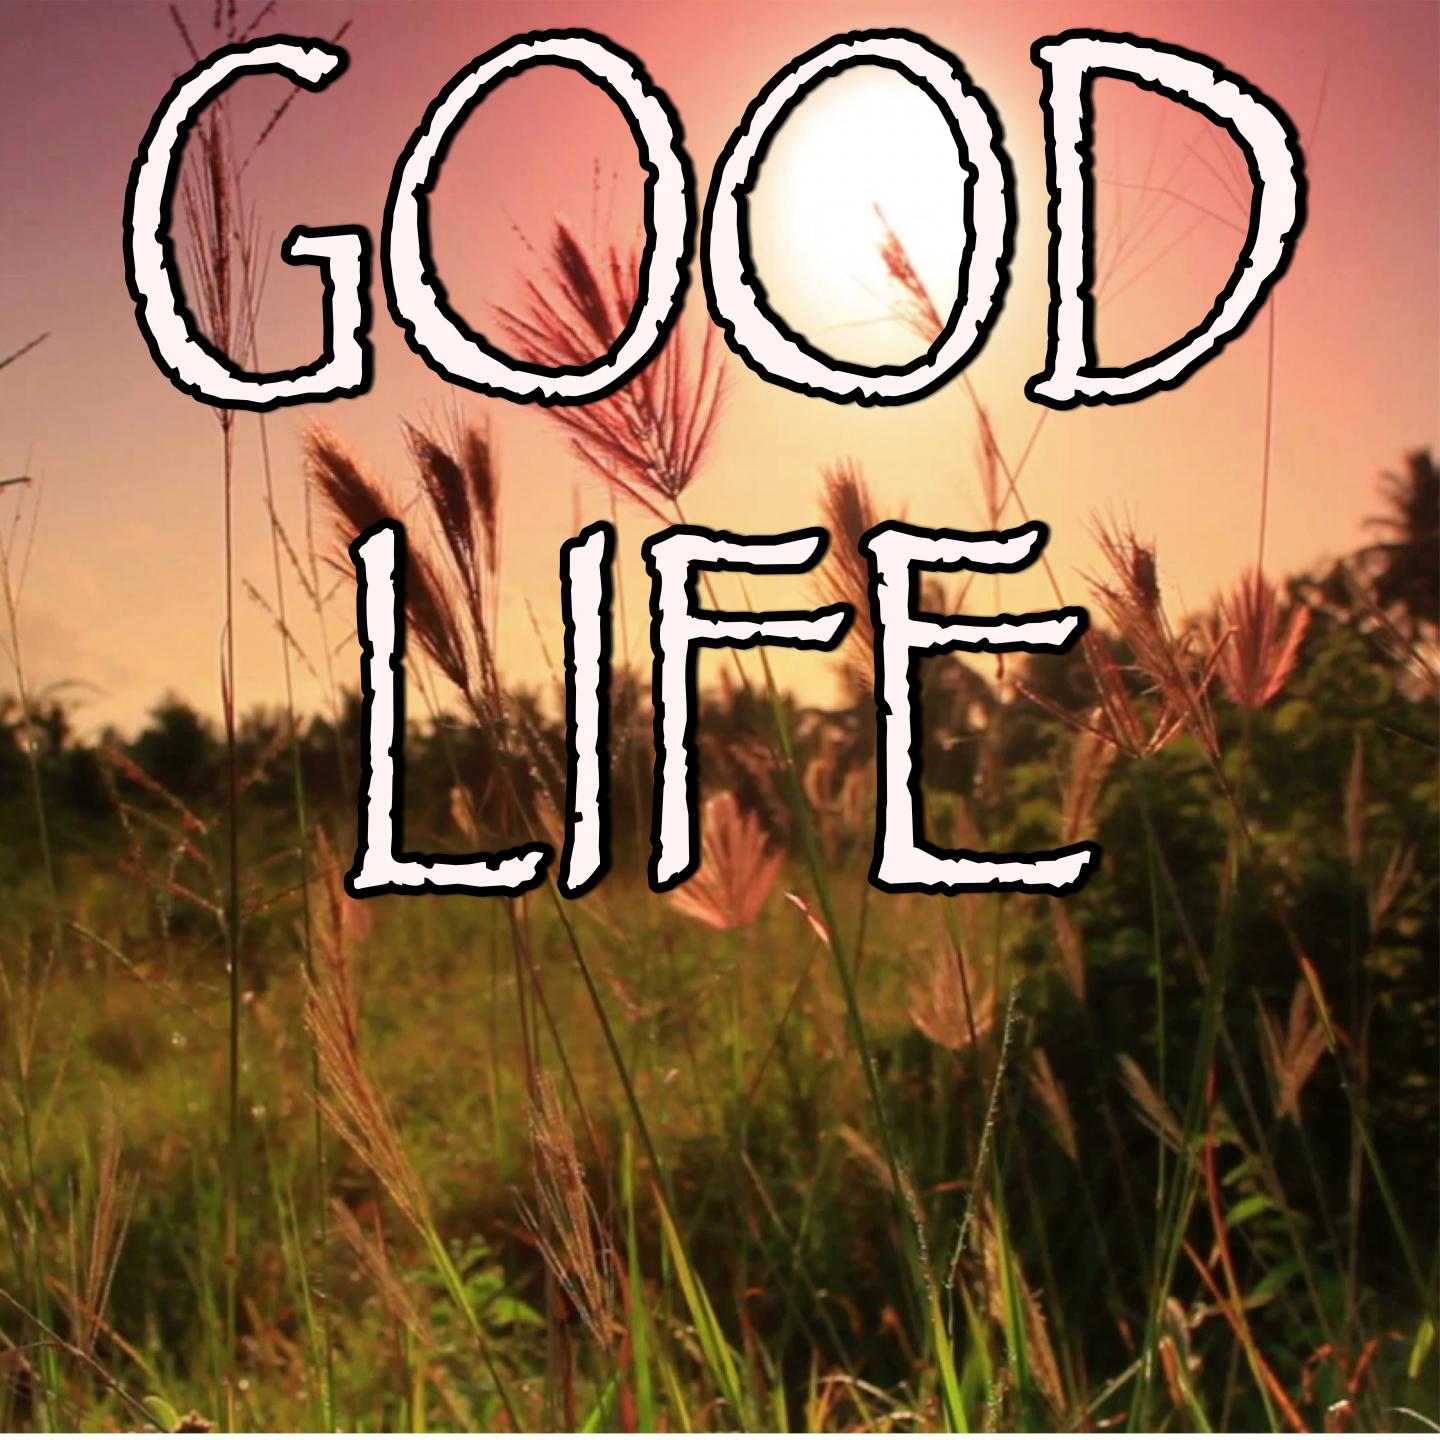 Good Life - Tribute to G-Eazy And Kehlani